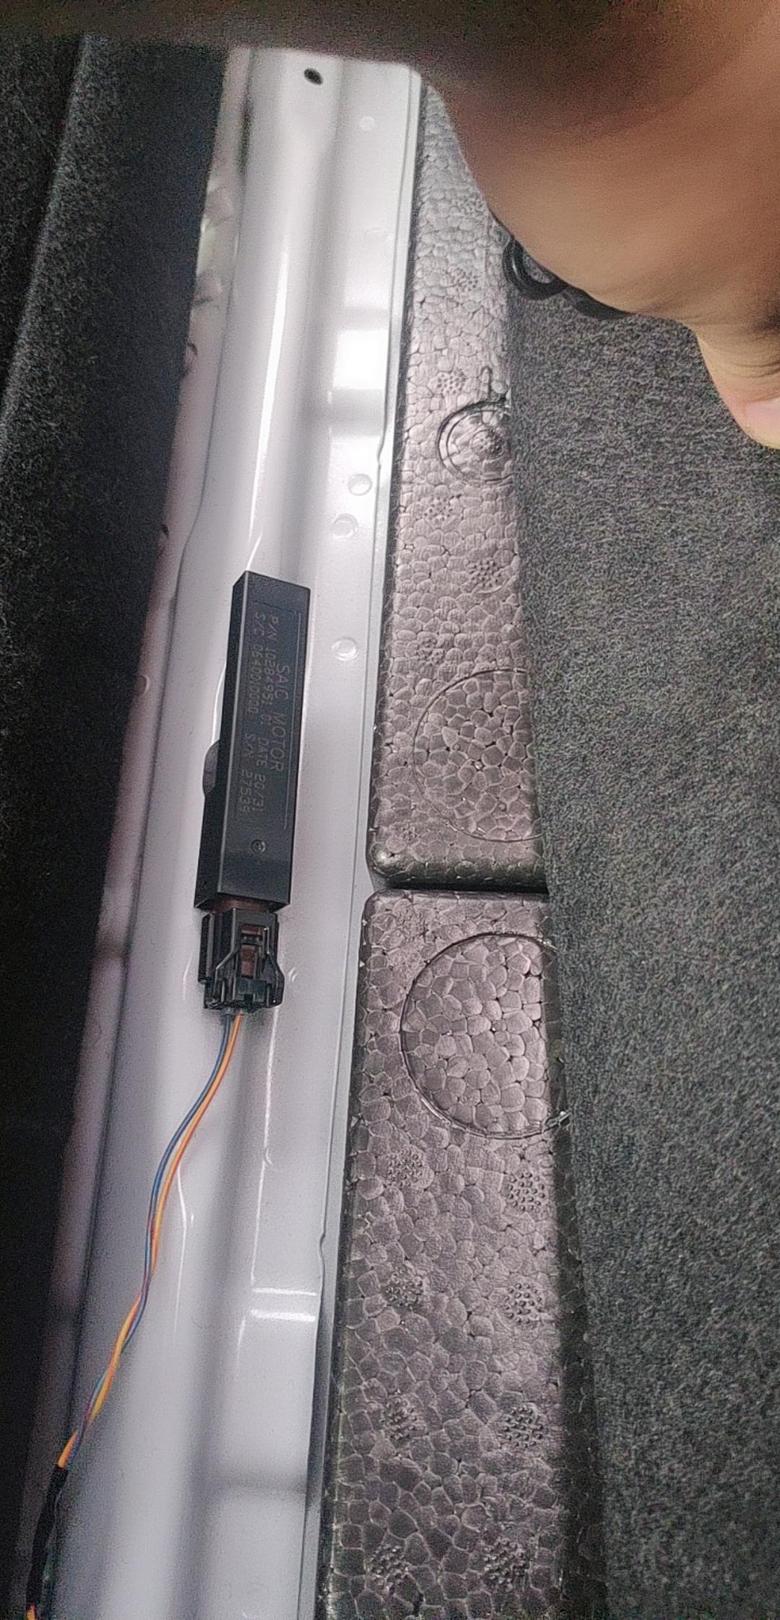 荣威i5 把后排座位放倒后在后备箱垫子下面，连接着两根电线的条状物，有谁知道是什么东西么？